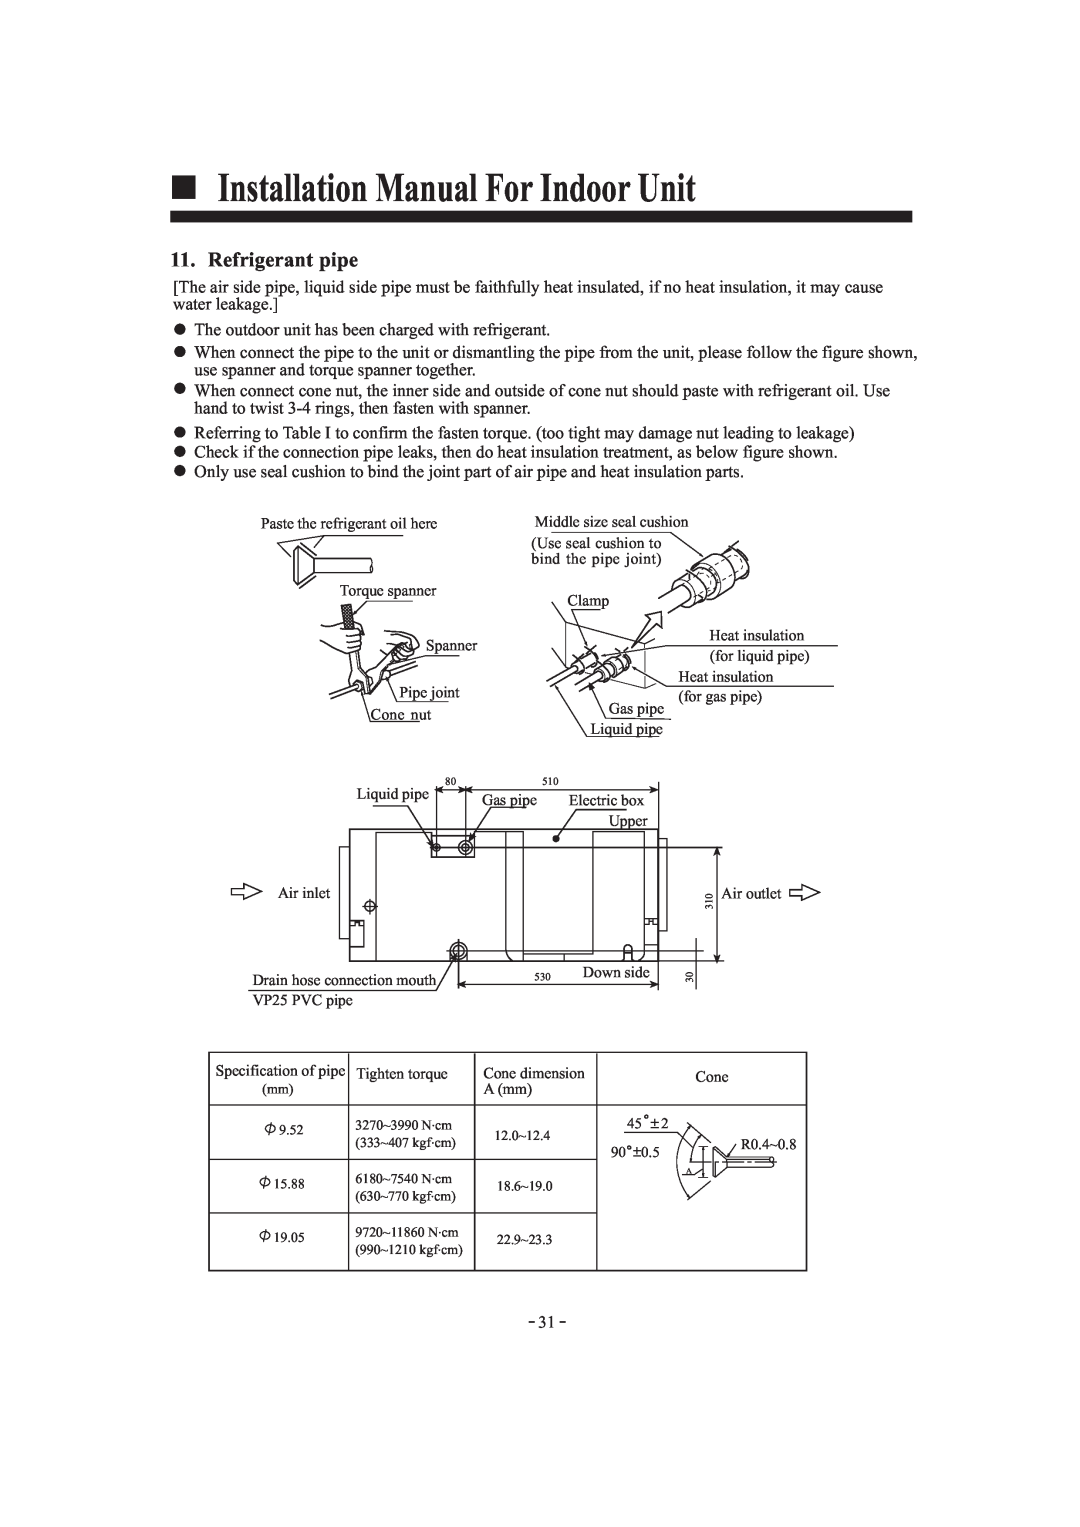 Haier HDU-42HF03/H installation manual Refrigerant pipe, Installation Manual For Indoor Unit 